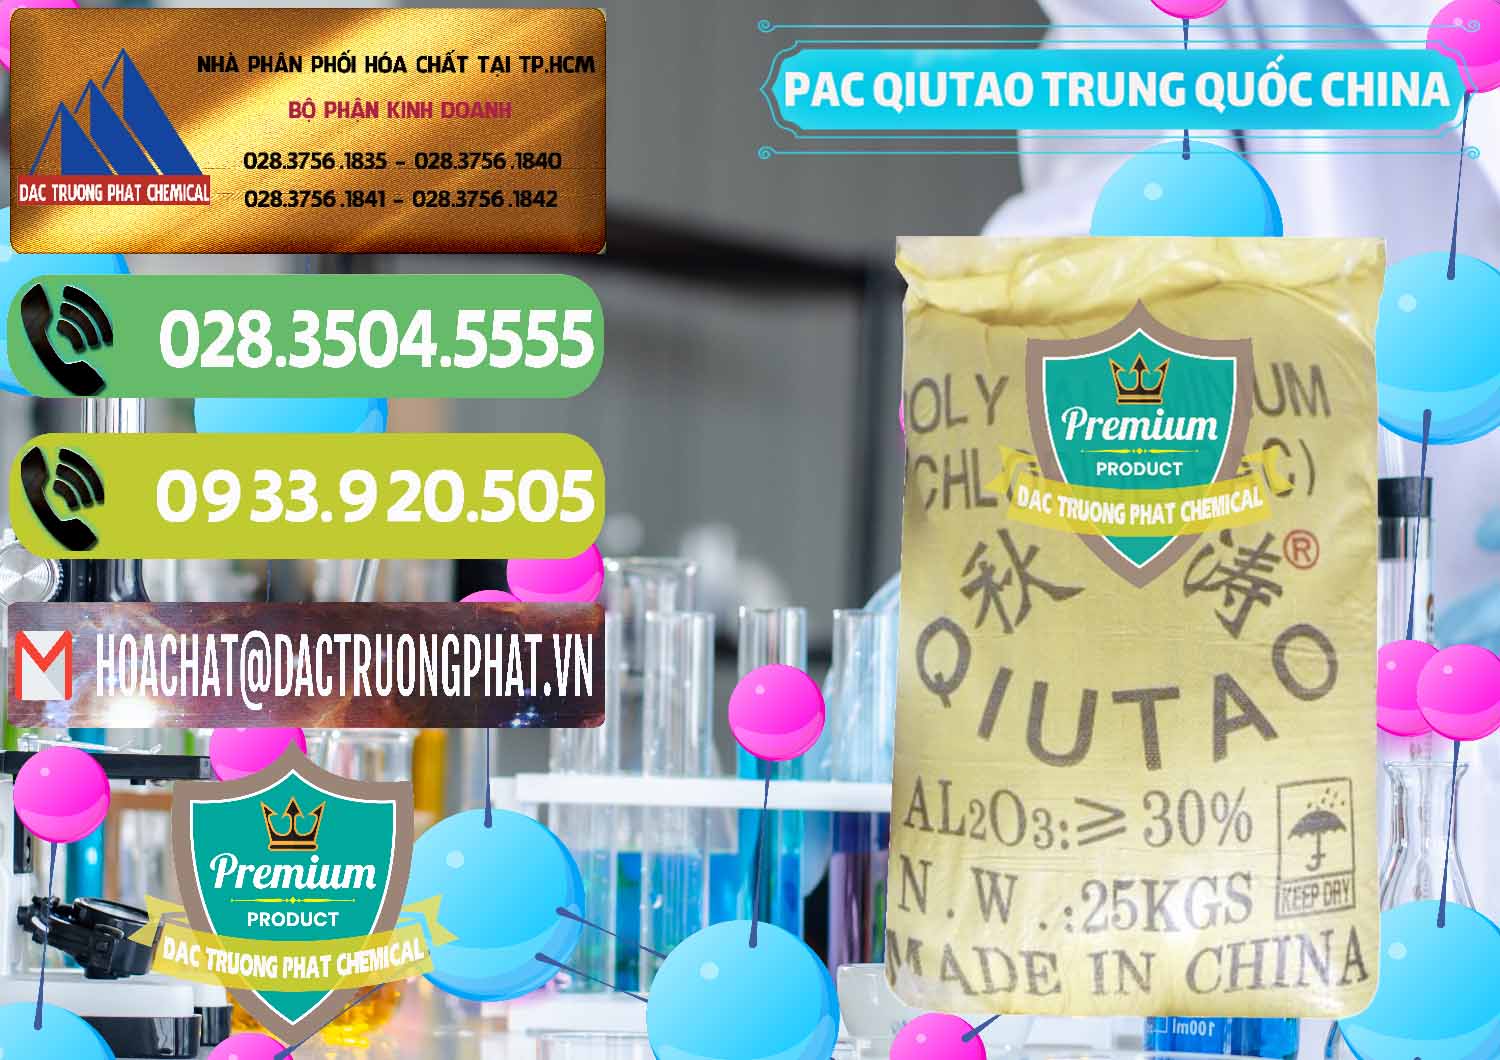 Nơi chuyên cung ứng ( bán ) PAC - Polyaluminium Chloride Qiutao Trung Quốc China - 0267 - Nhà phân phối ( kinh doanh ) hóa chất tại TP.HCM - hoachatmientay.vn